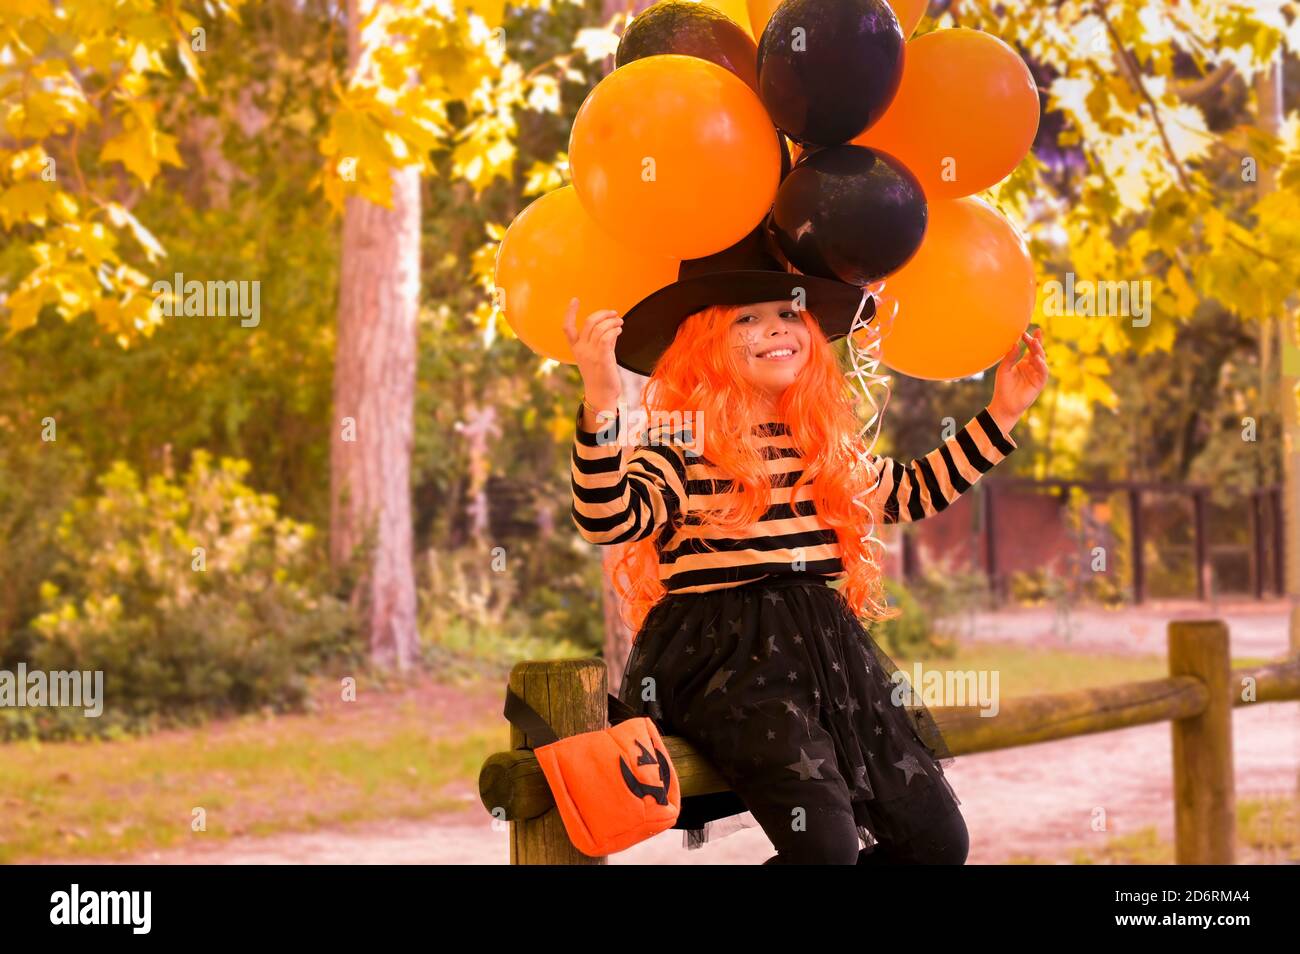 Halloween per bambini. Bambina nel parco autunnale. Un bambino in un costume di carnevale su Halloween con grandi palloncini colorati. La messa a fuoco viene spostata in modo morbido sull'oggetto principale. Spazio di copia. Foto Stock